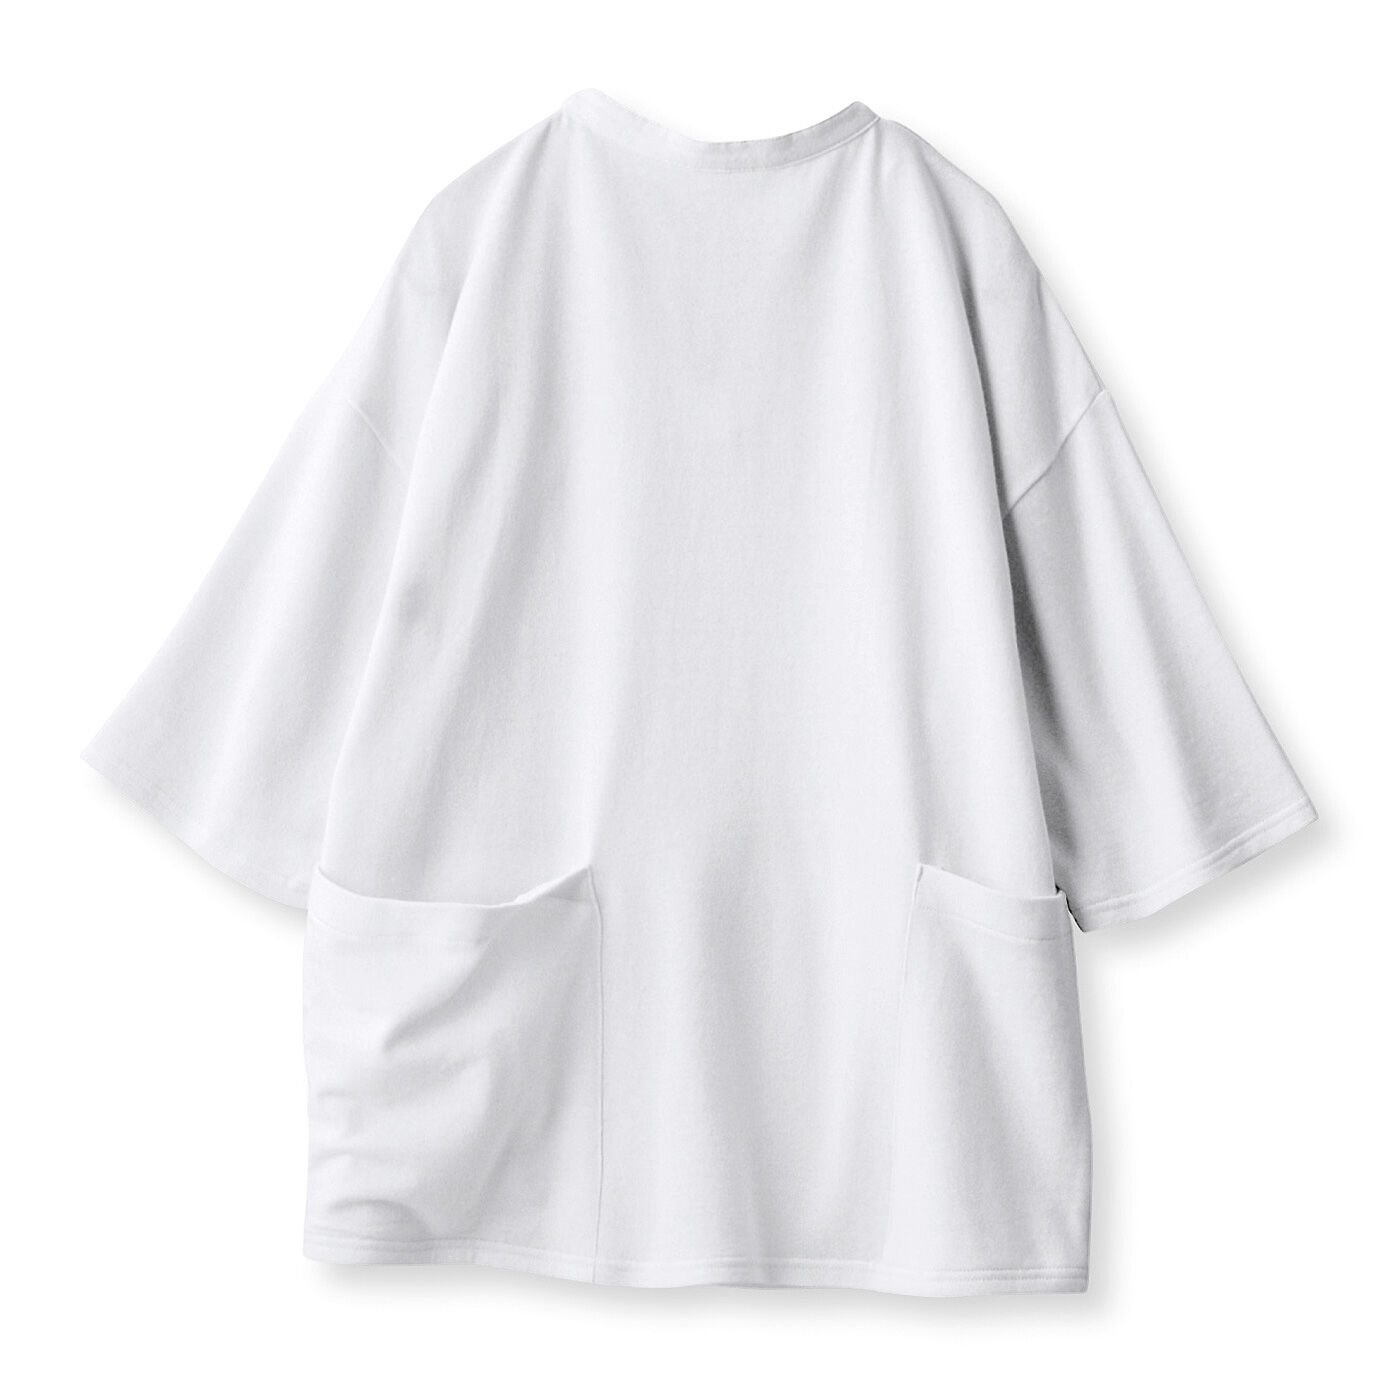 Real Stock|UP.de　着られるバッグ Tシャツ感覚なのにきれい見えする ポケットいっぱい てぶらなカットソースキッパーシャツ〈オフホワイト〉|〈BACK〉